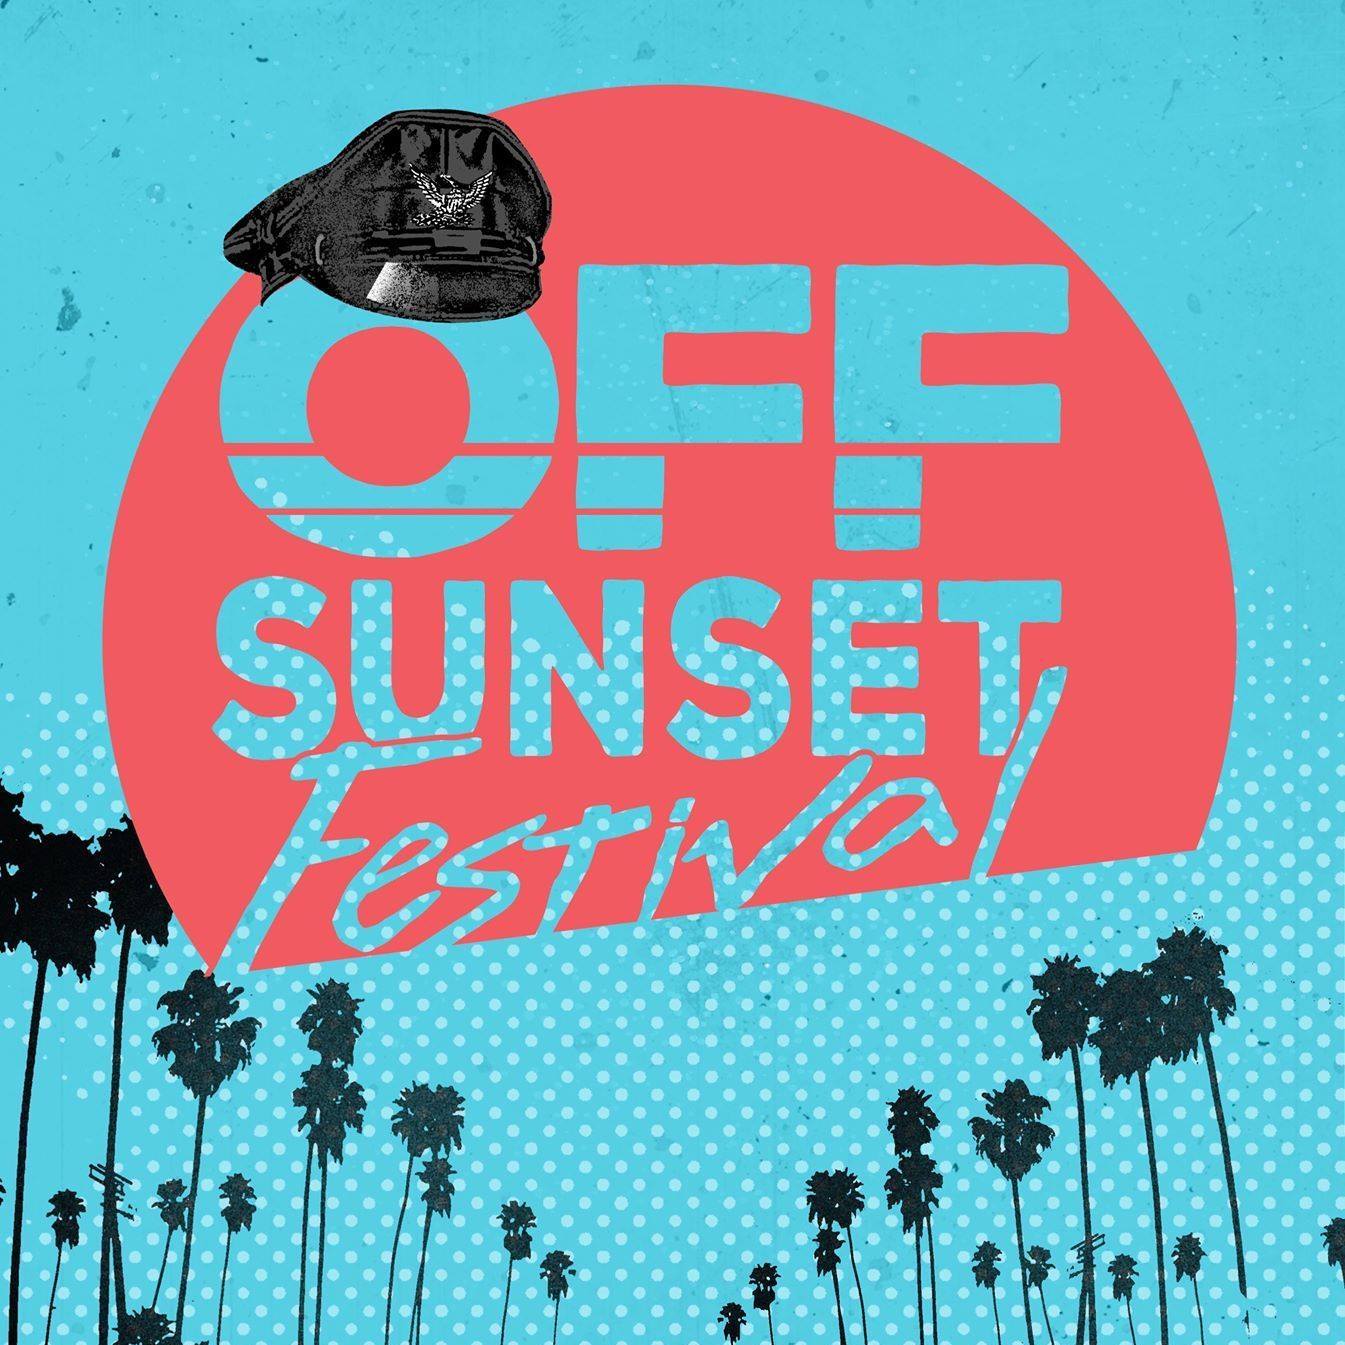 Off Sunset Festival